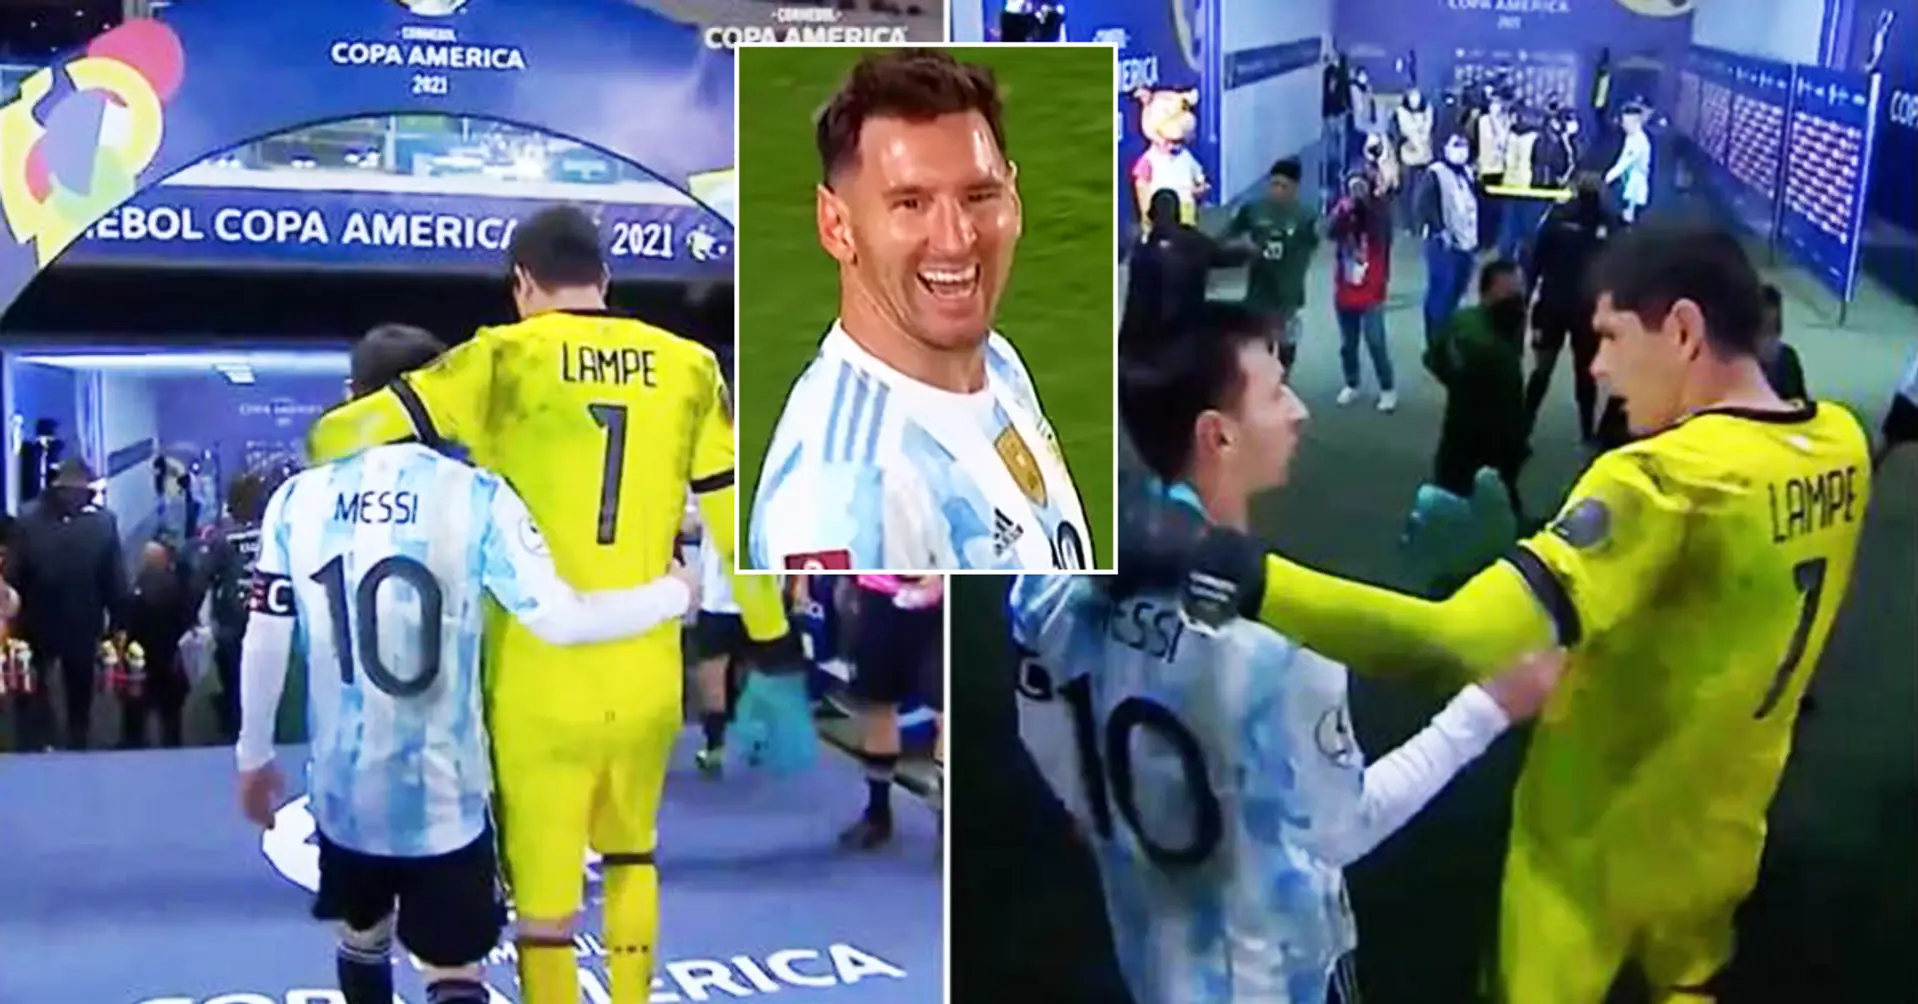 Bolivien-Torhüter verrät, was er über Leo Messi denkt, nachdem er 3 Gegentore von ihm kassiert hat